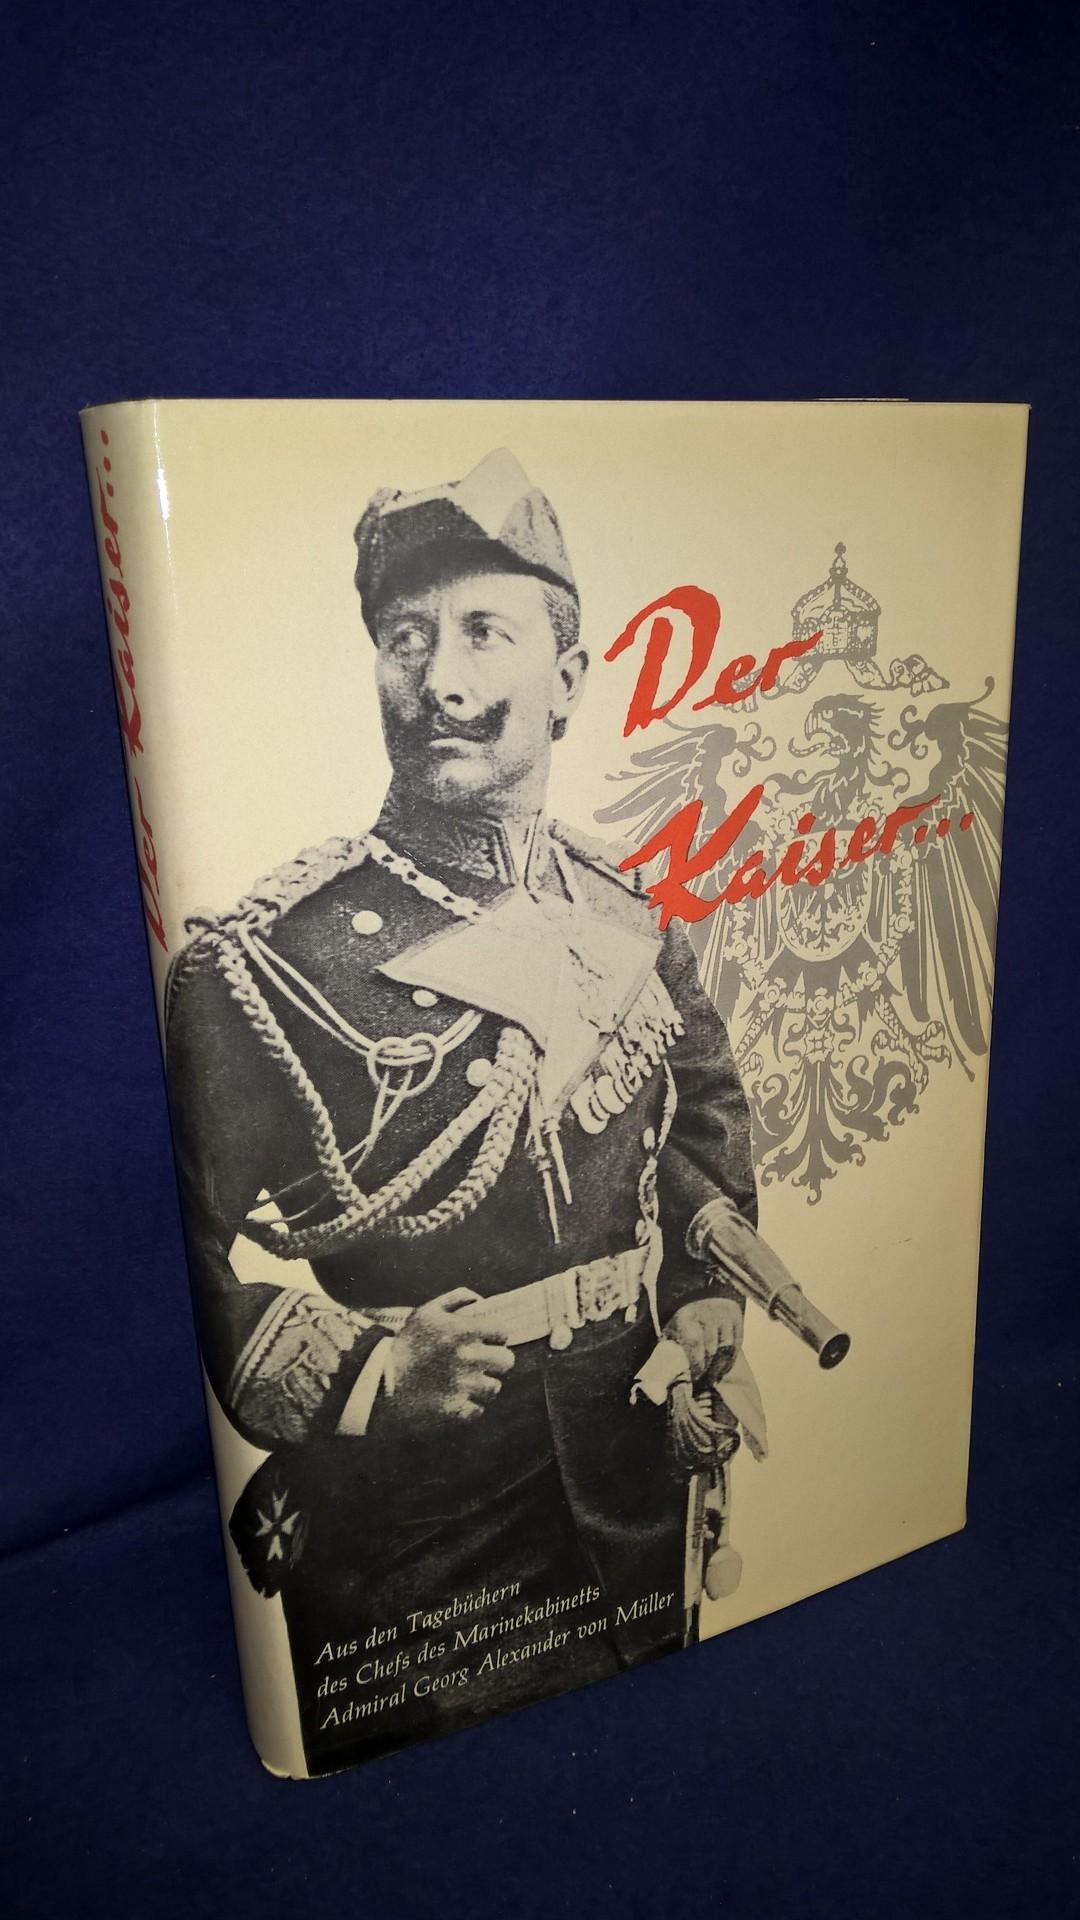 Der Kaiser. Aufzeichnungen des Chefs des Marinekabinetts Admiral Georg Alexander v. Müller über die Ära Wilhelms II.